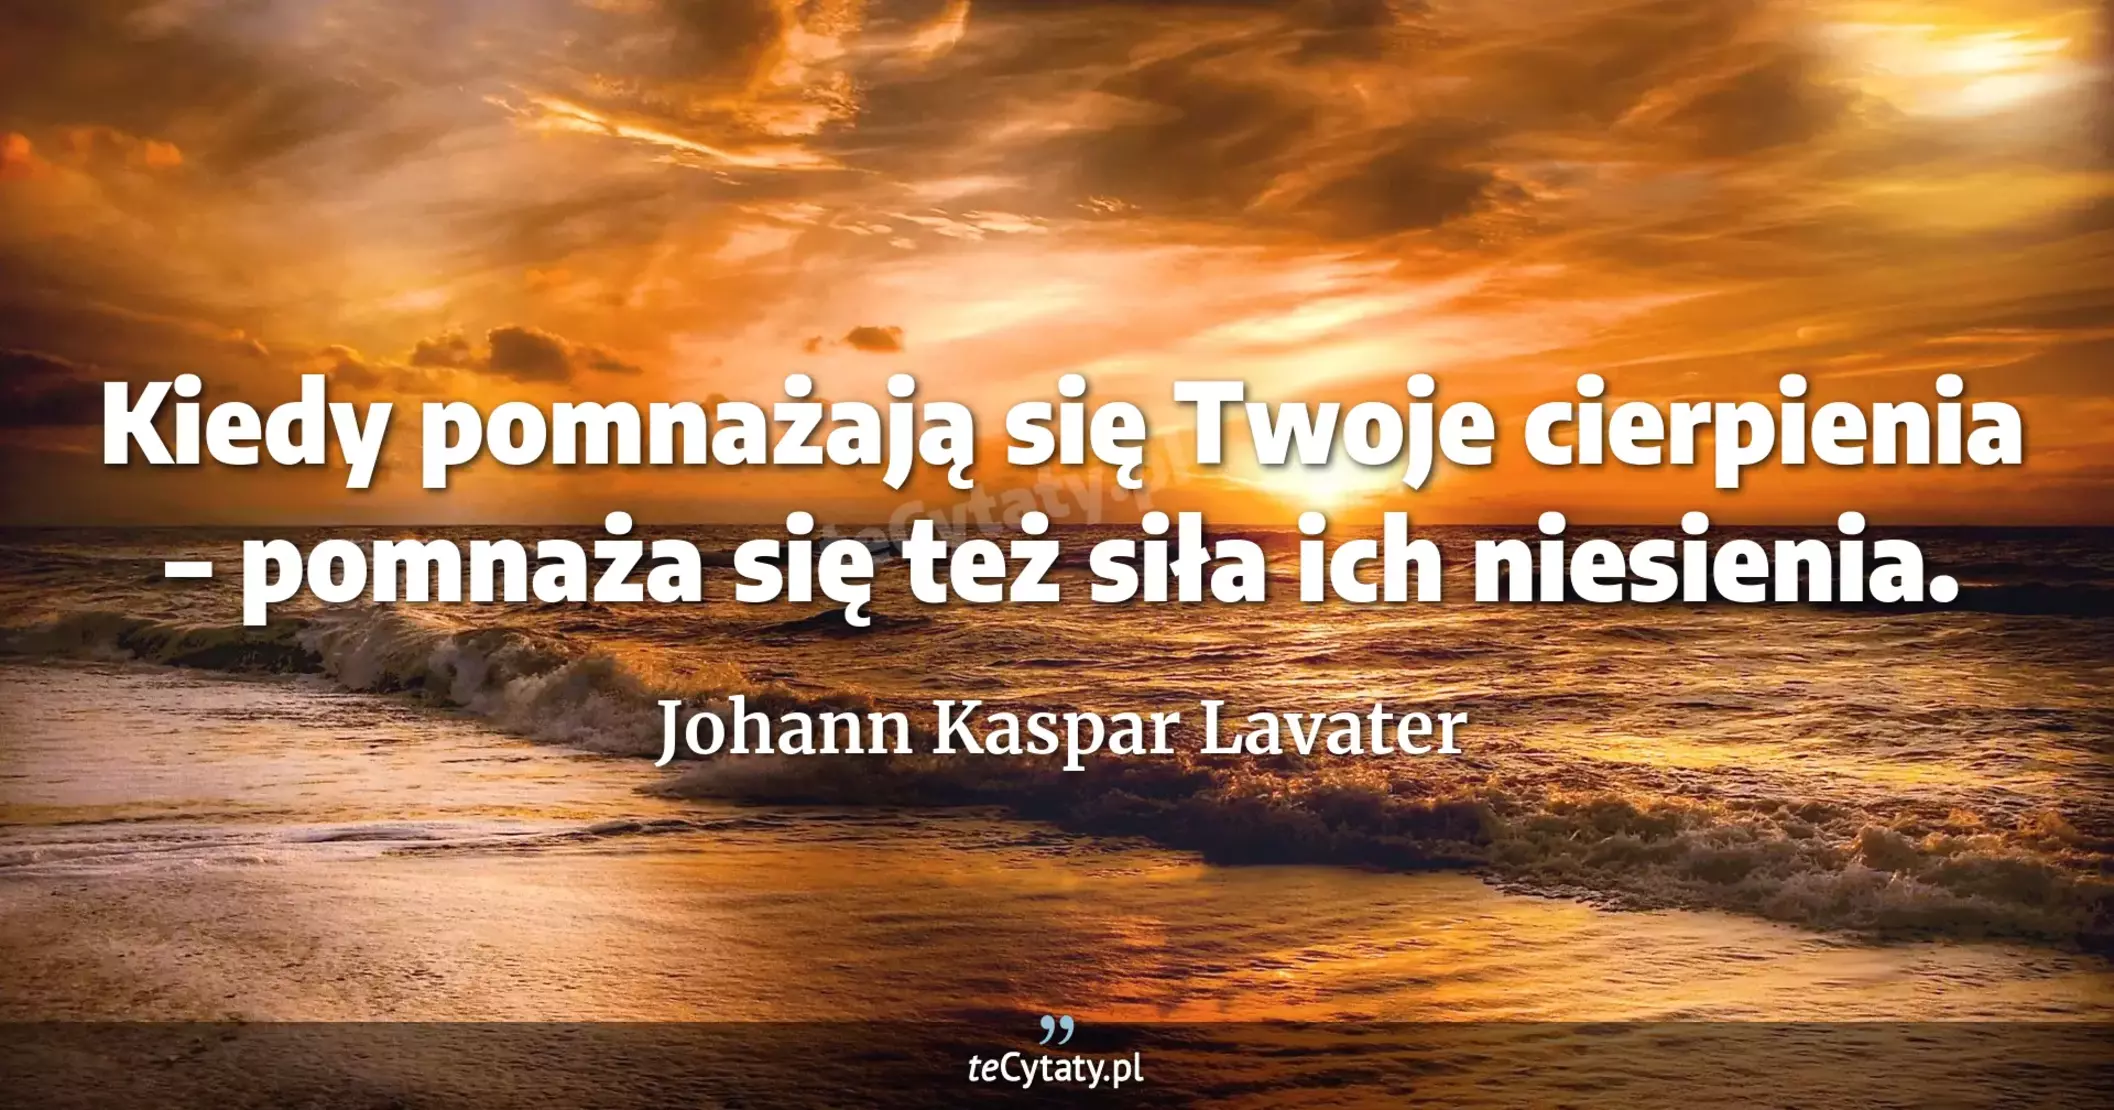 Kiedy pomnażają się Twoje cierpienia – pomnaża się też siła ich niesienia. - Johann Kaspar Lavater